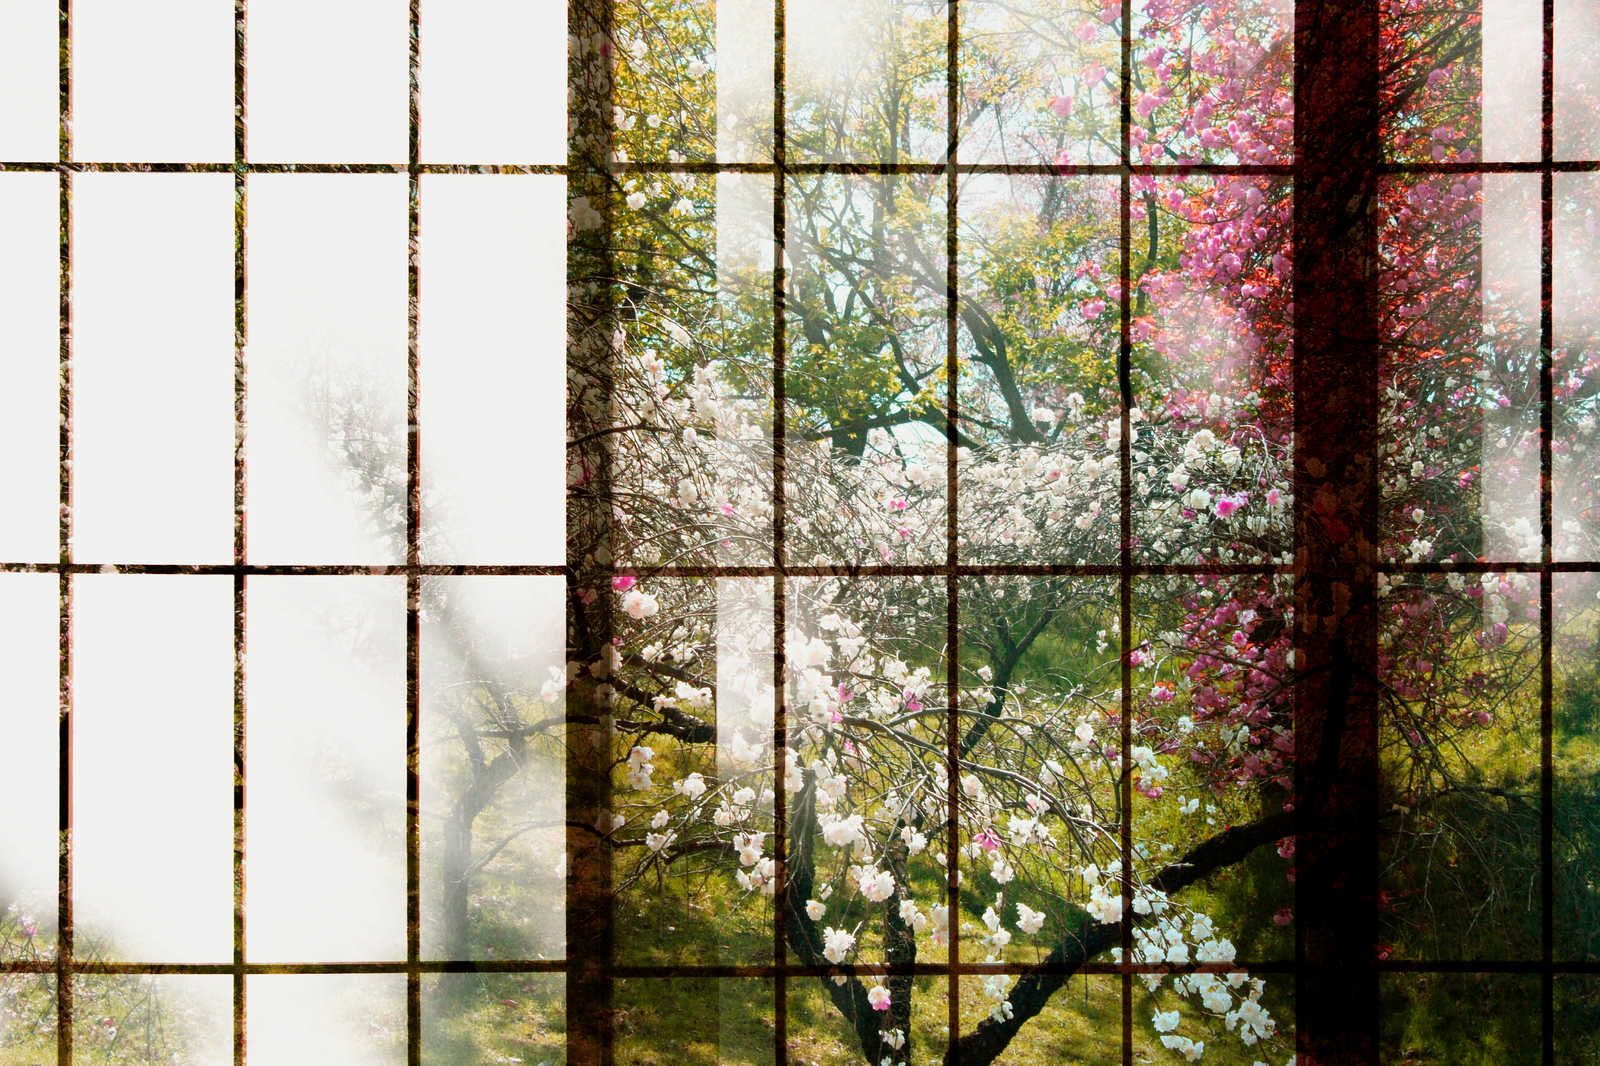             Orchard 1 - Toile, fenêtre avec vue sur le jardin - 0,90 m x 0,60 m
        